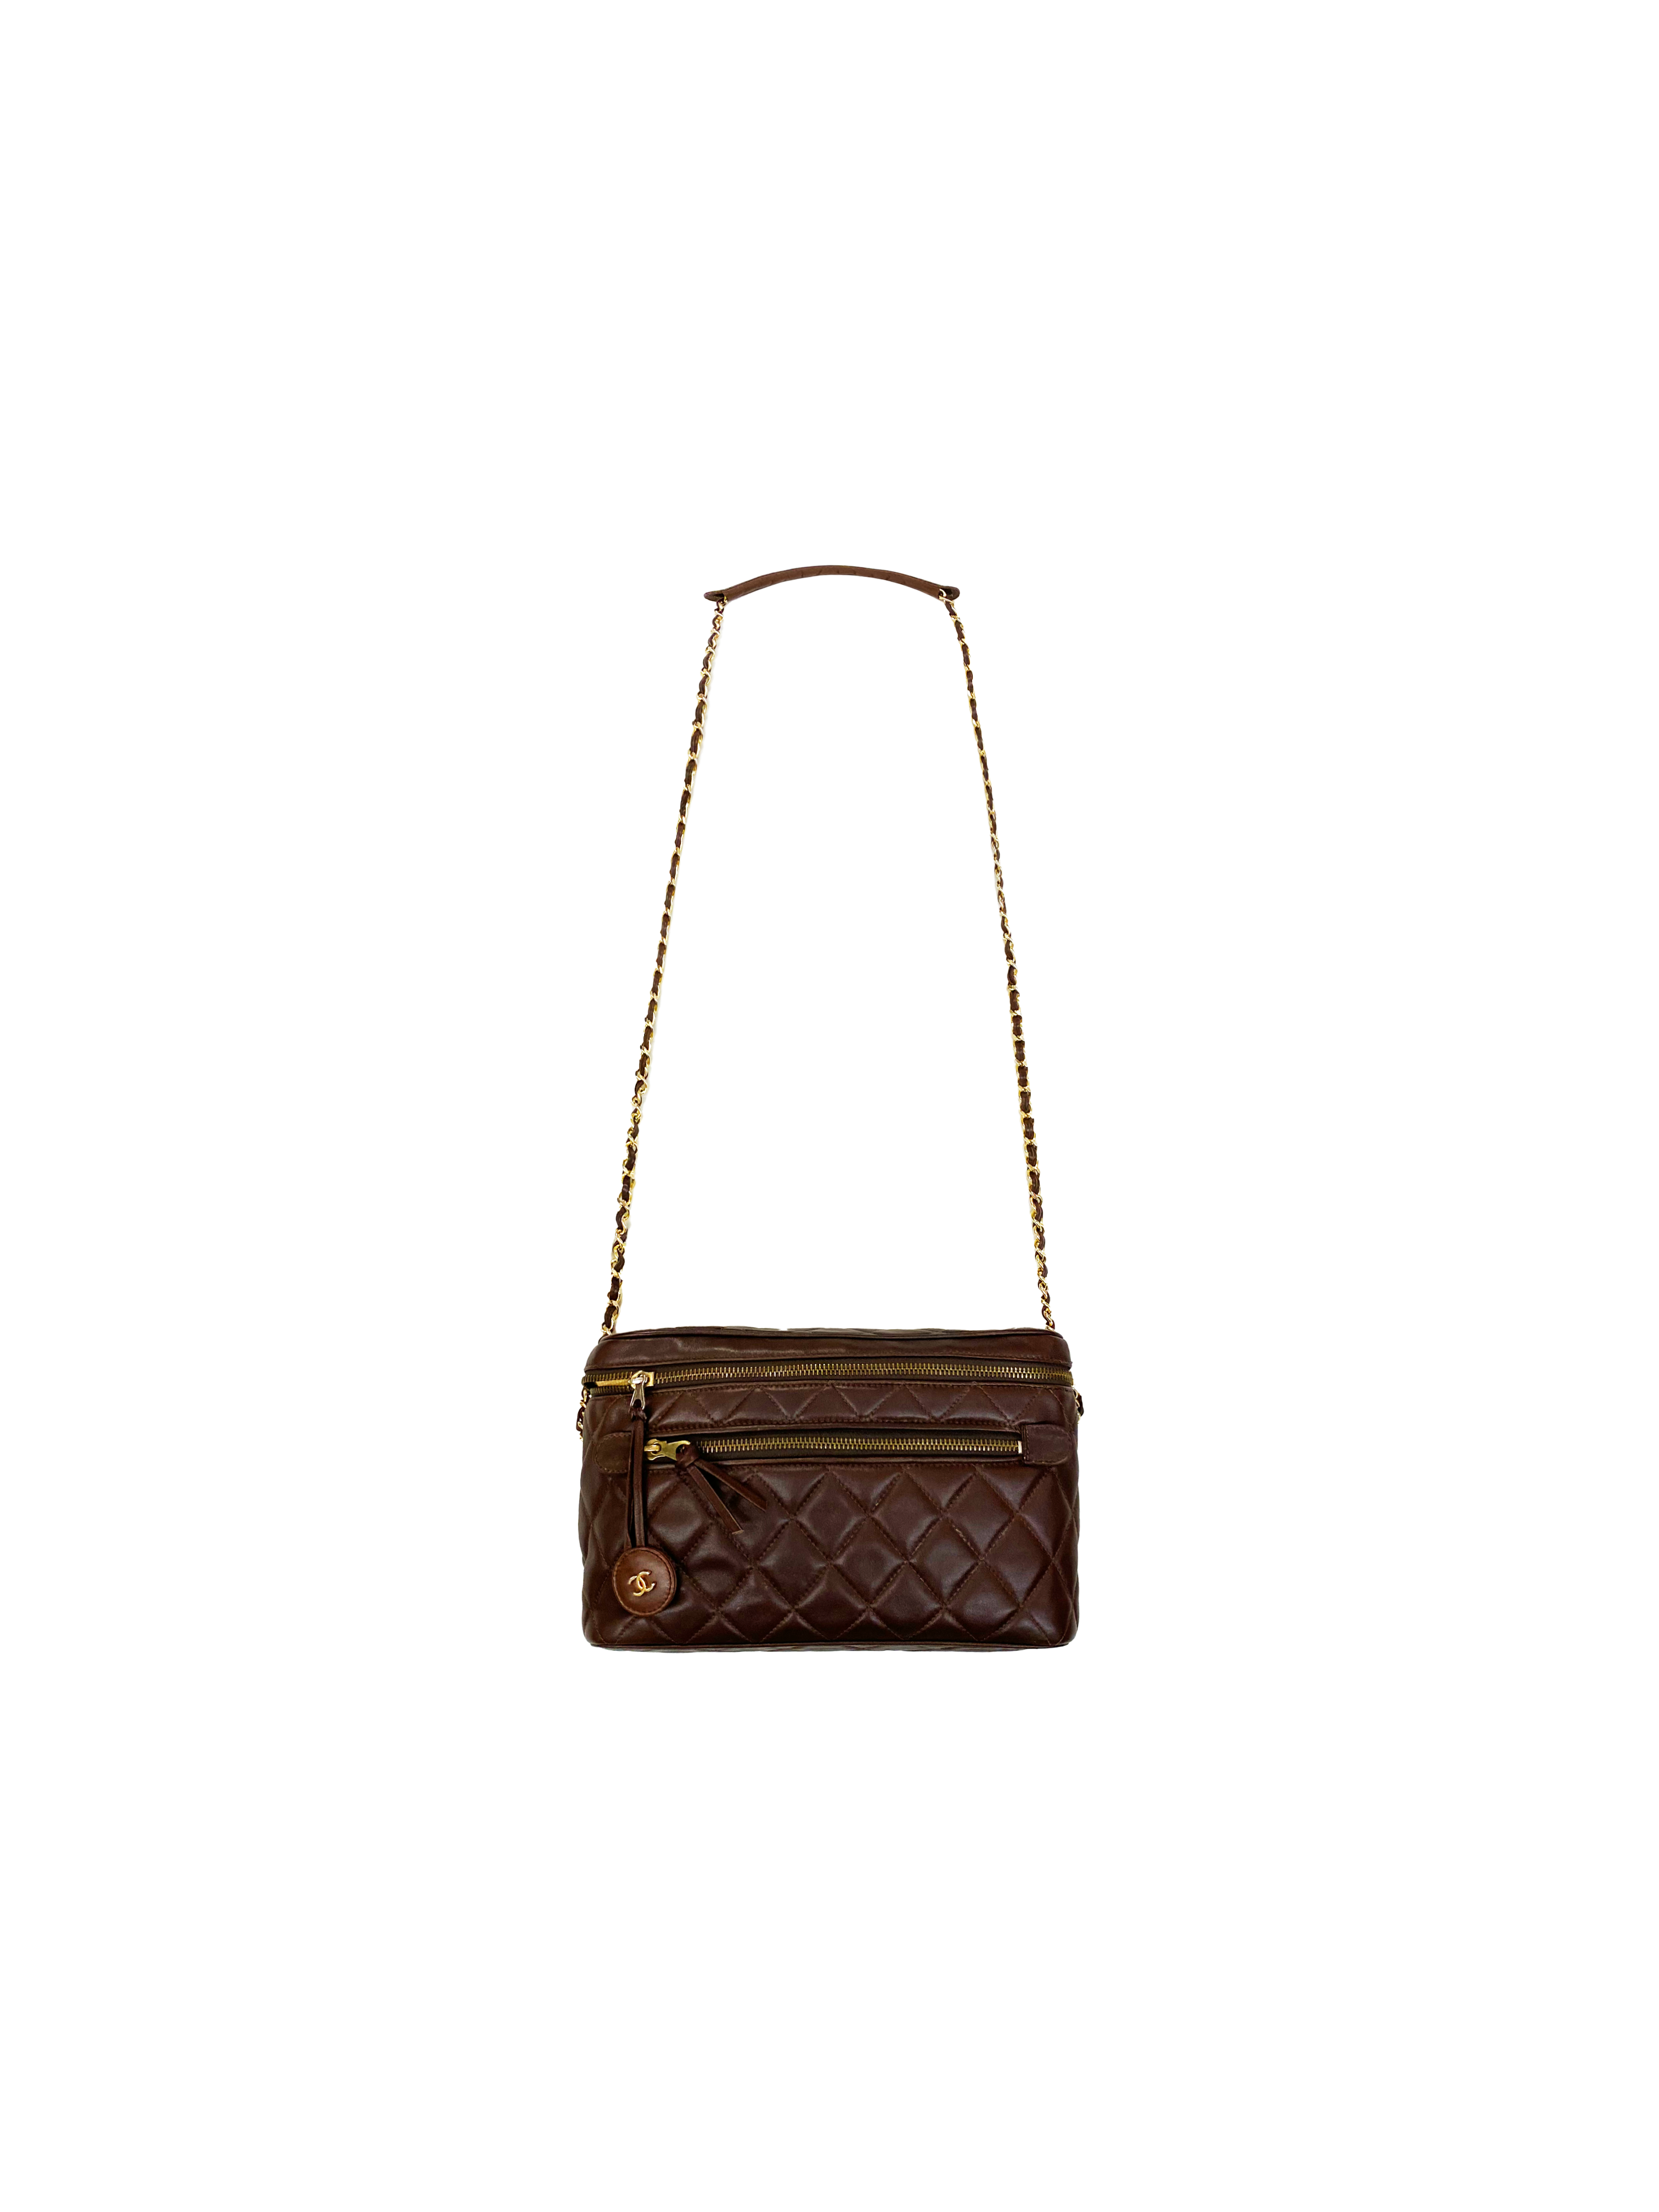 Chanel Brown Vintage Handbags